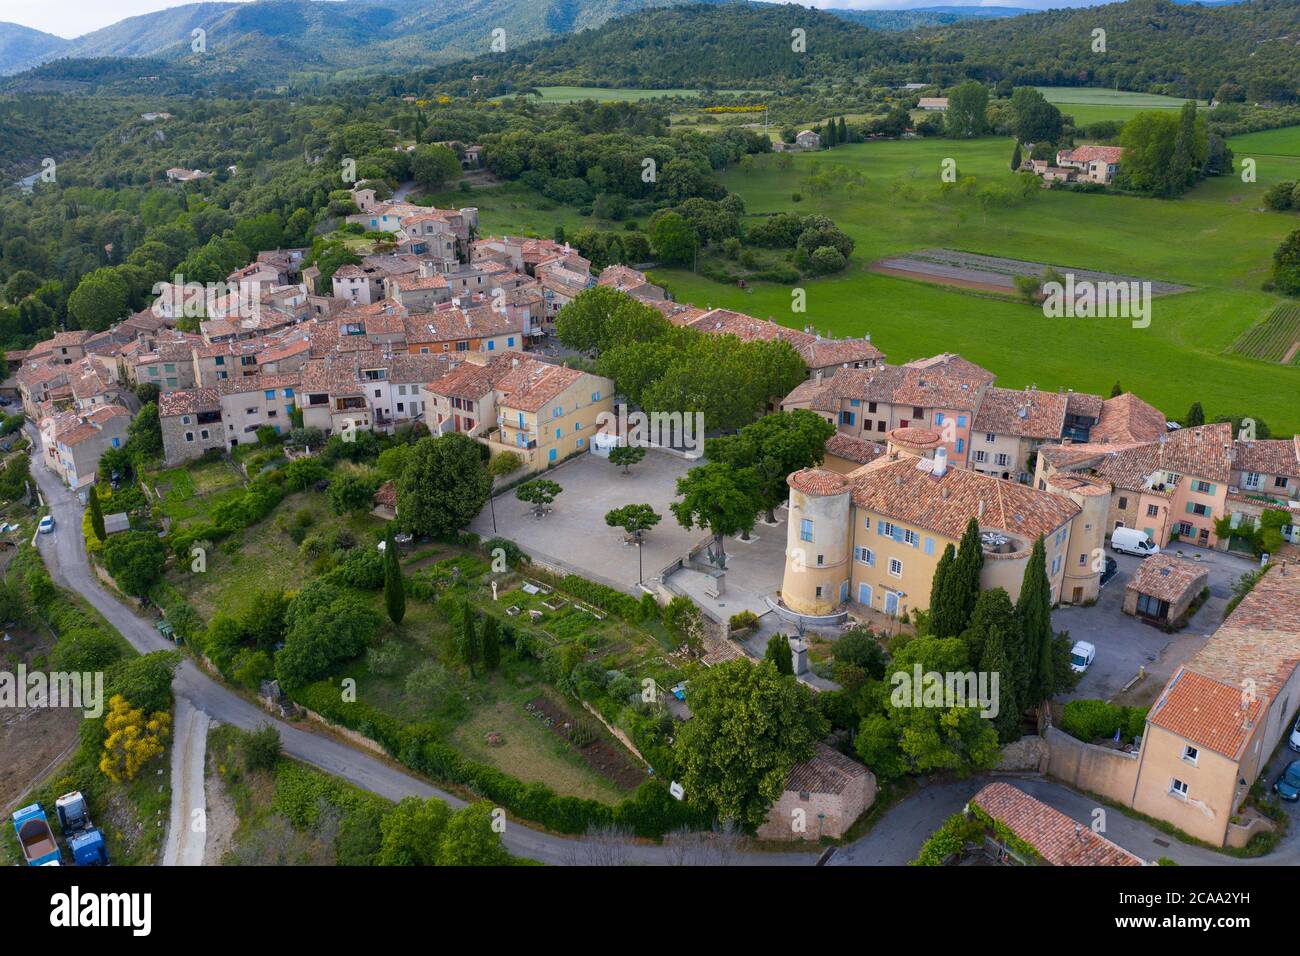 France, Var, vue aérienne de Tourtour, village dans le ciel, étiqueté les plus Beaux villages de France (les plus beaux villages de France) Banque D'Images